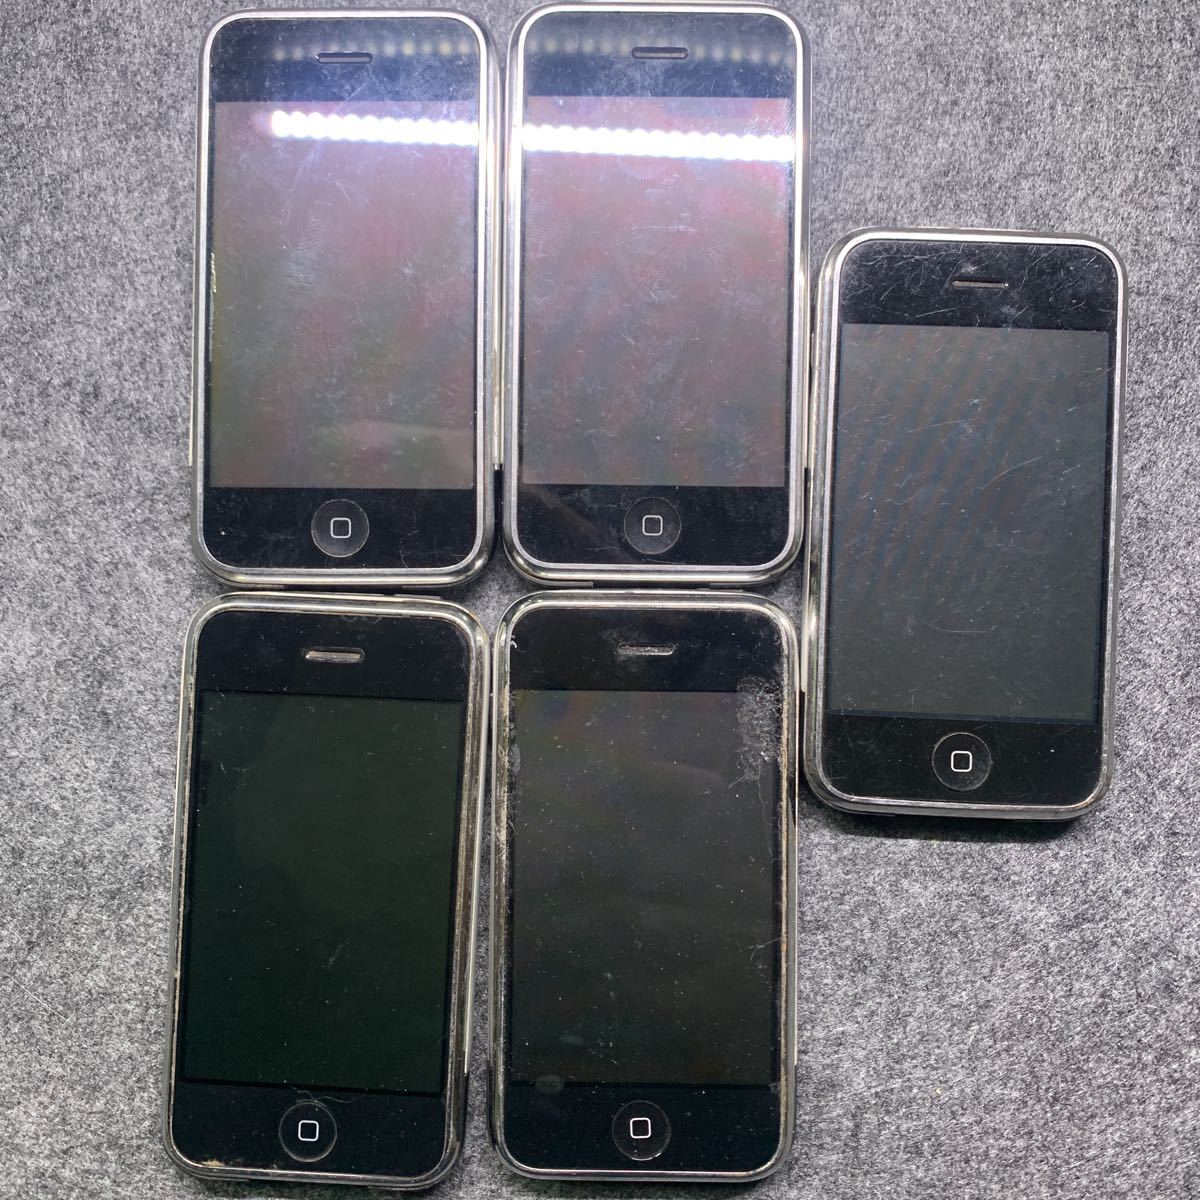 ヤフオク! -「iphone 2g」(携帯電話、スマートフォン) の落札相場 